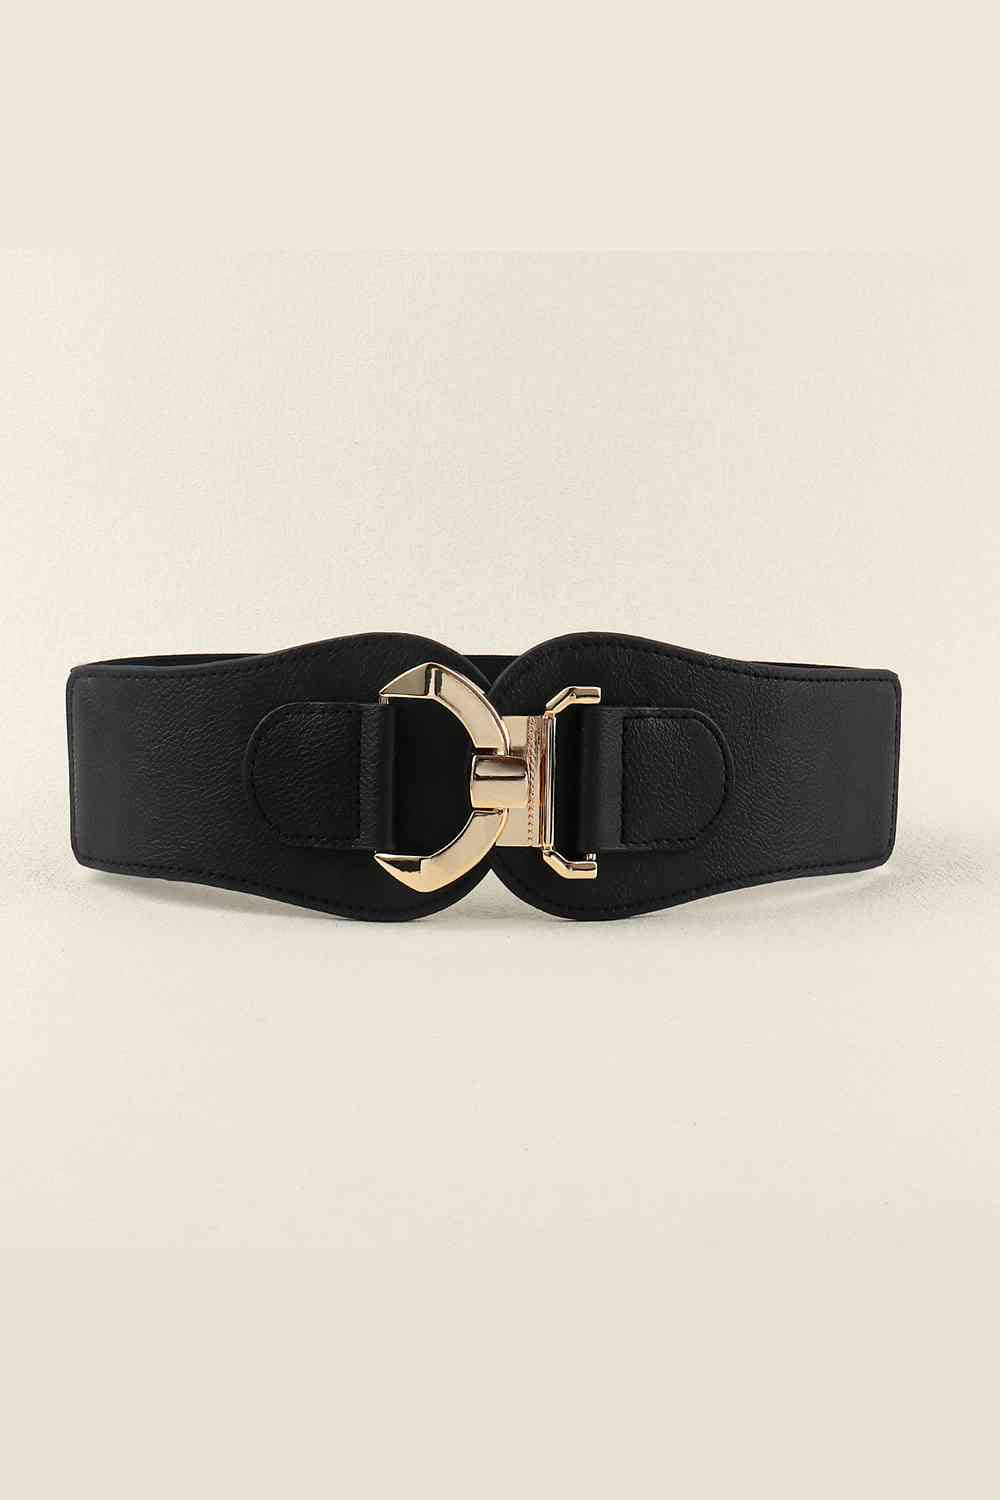 TEEK - Hook Buckle Elastic Belt BELT TEEK Trend Black  